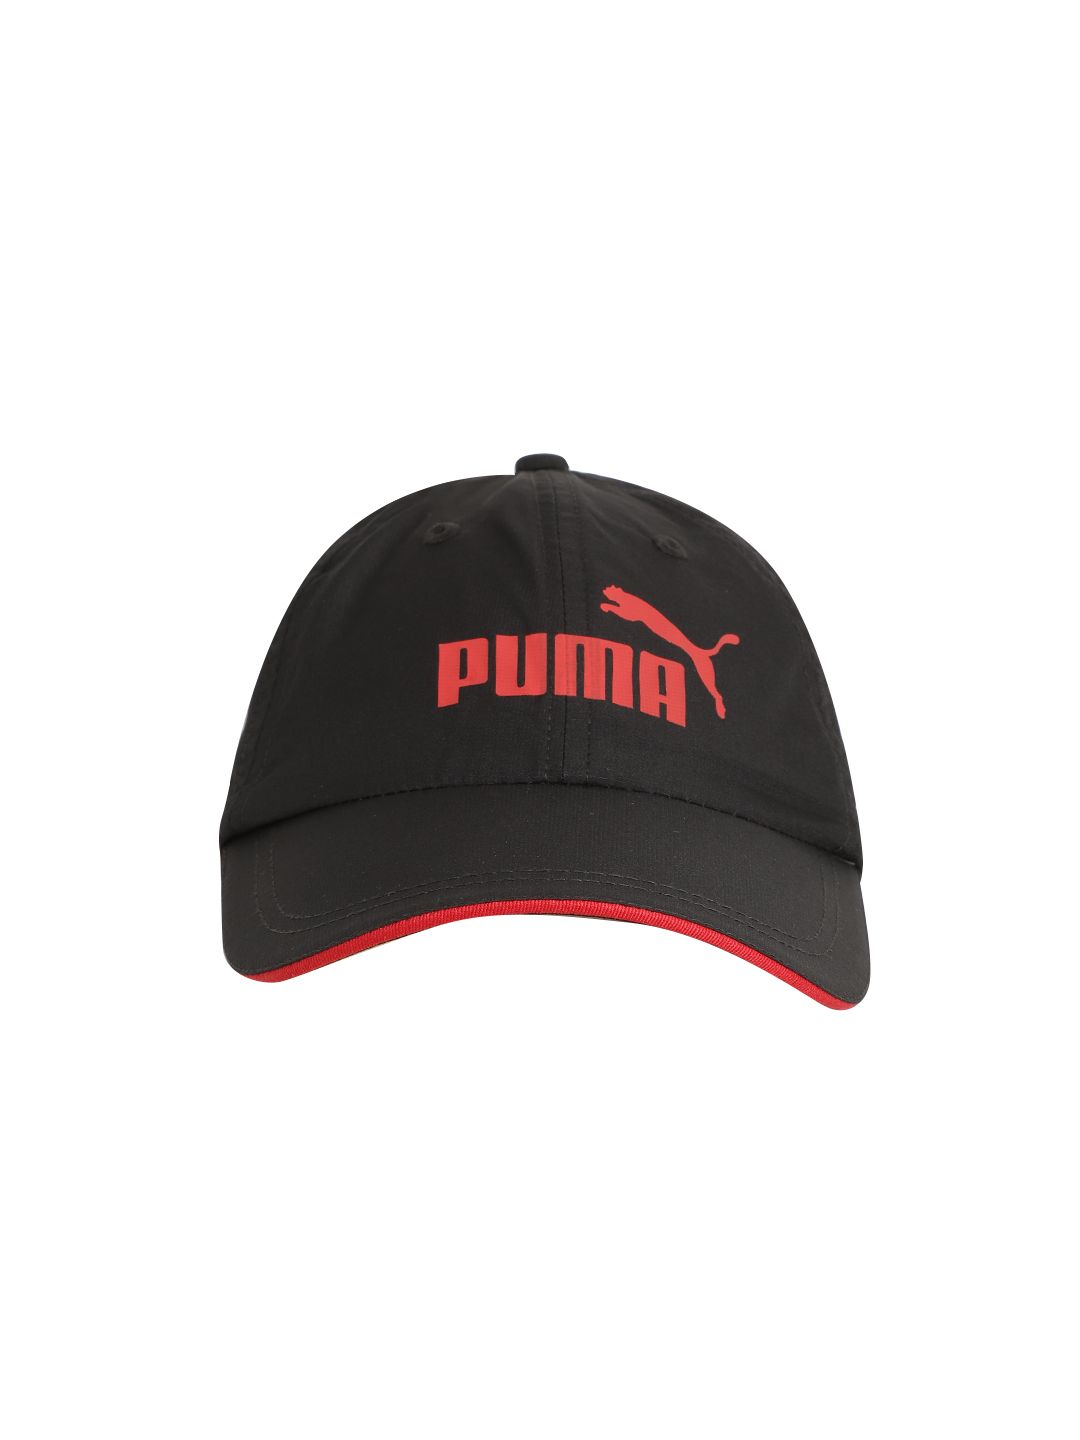 Puma Unisex Black & Red Brand Logo Print Performance Visor Cap Price in India